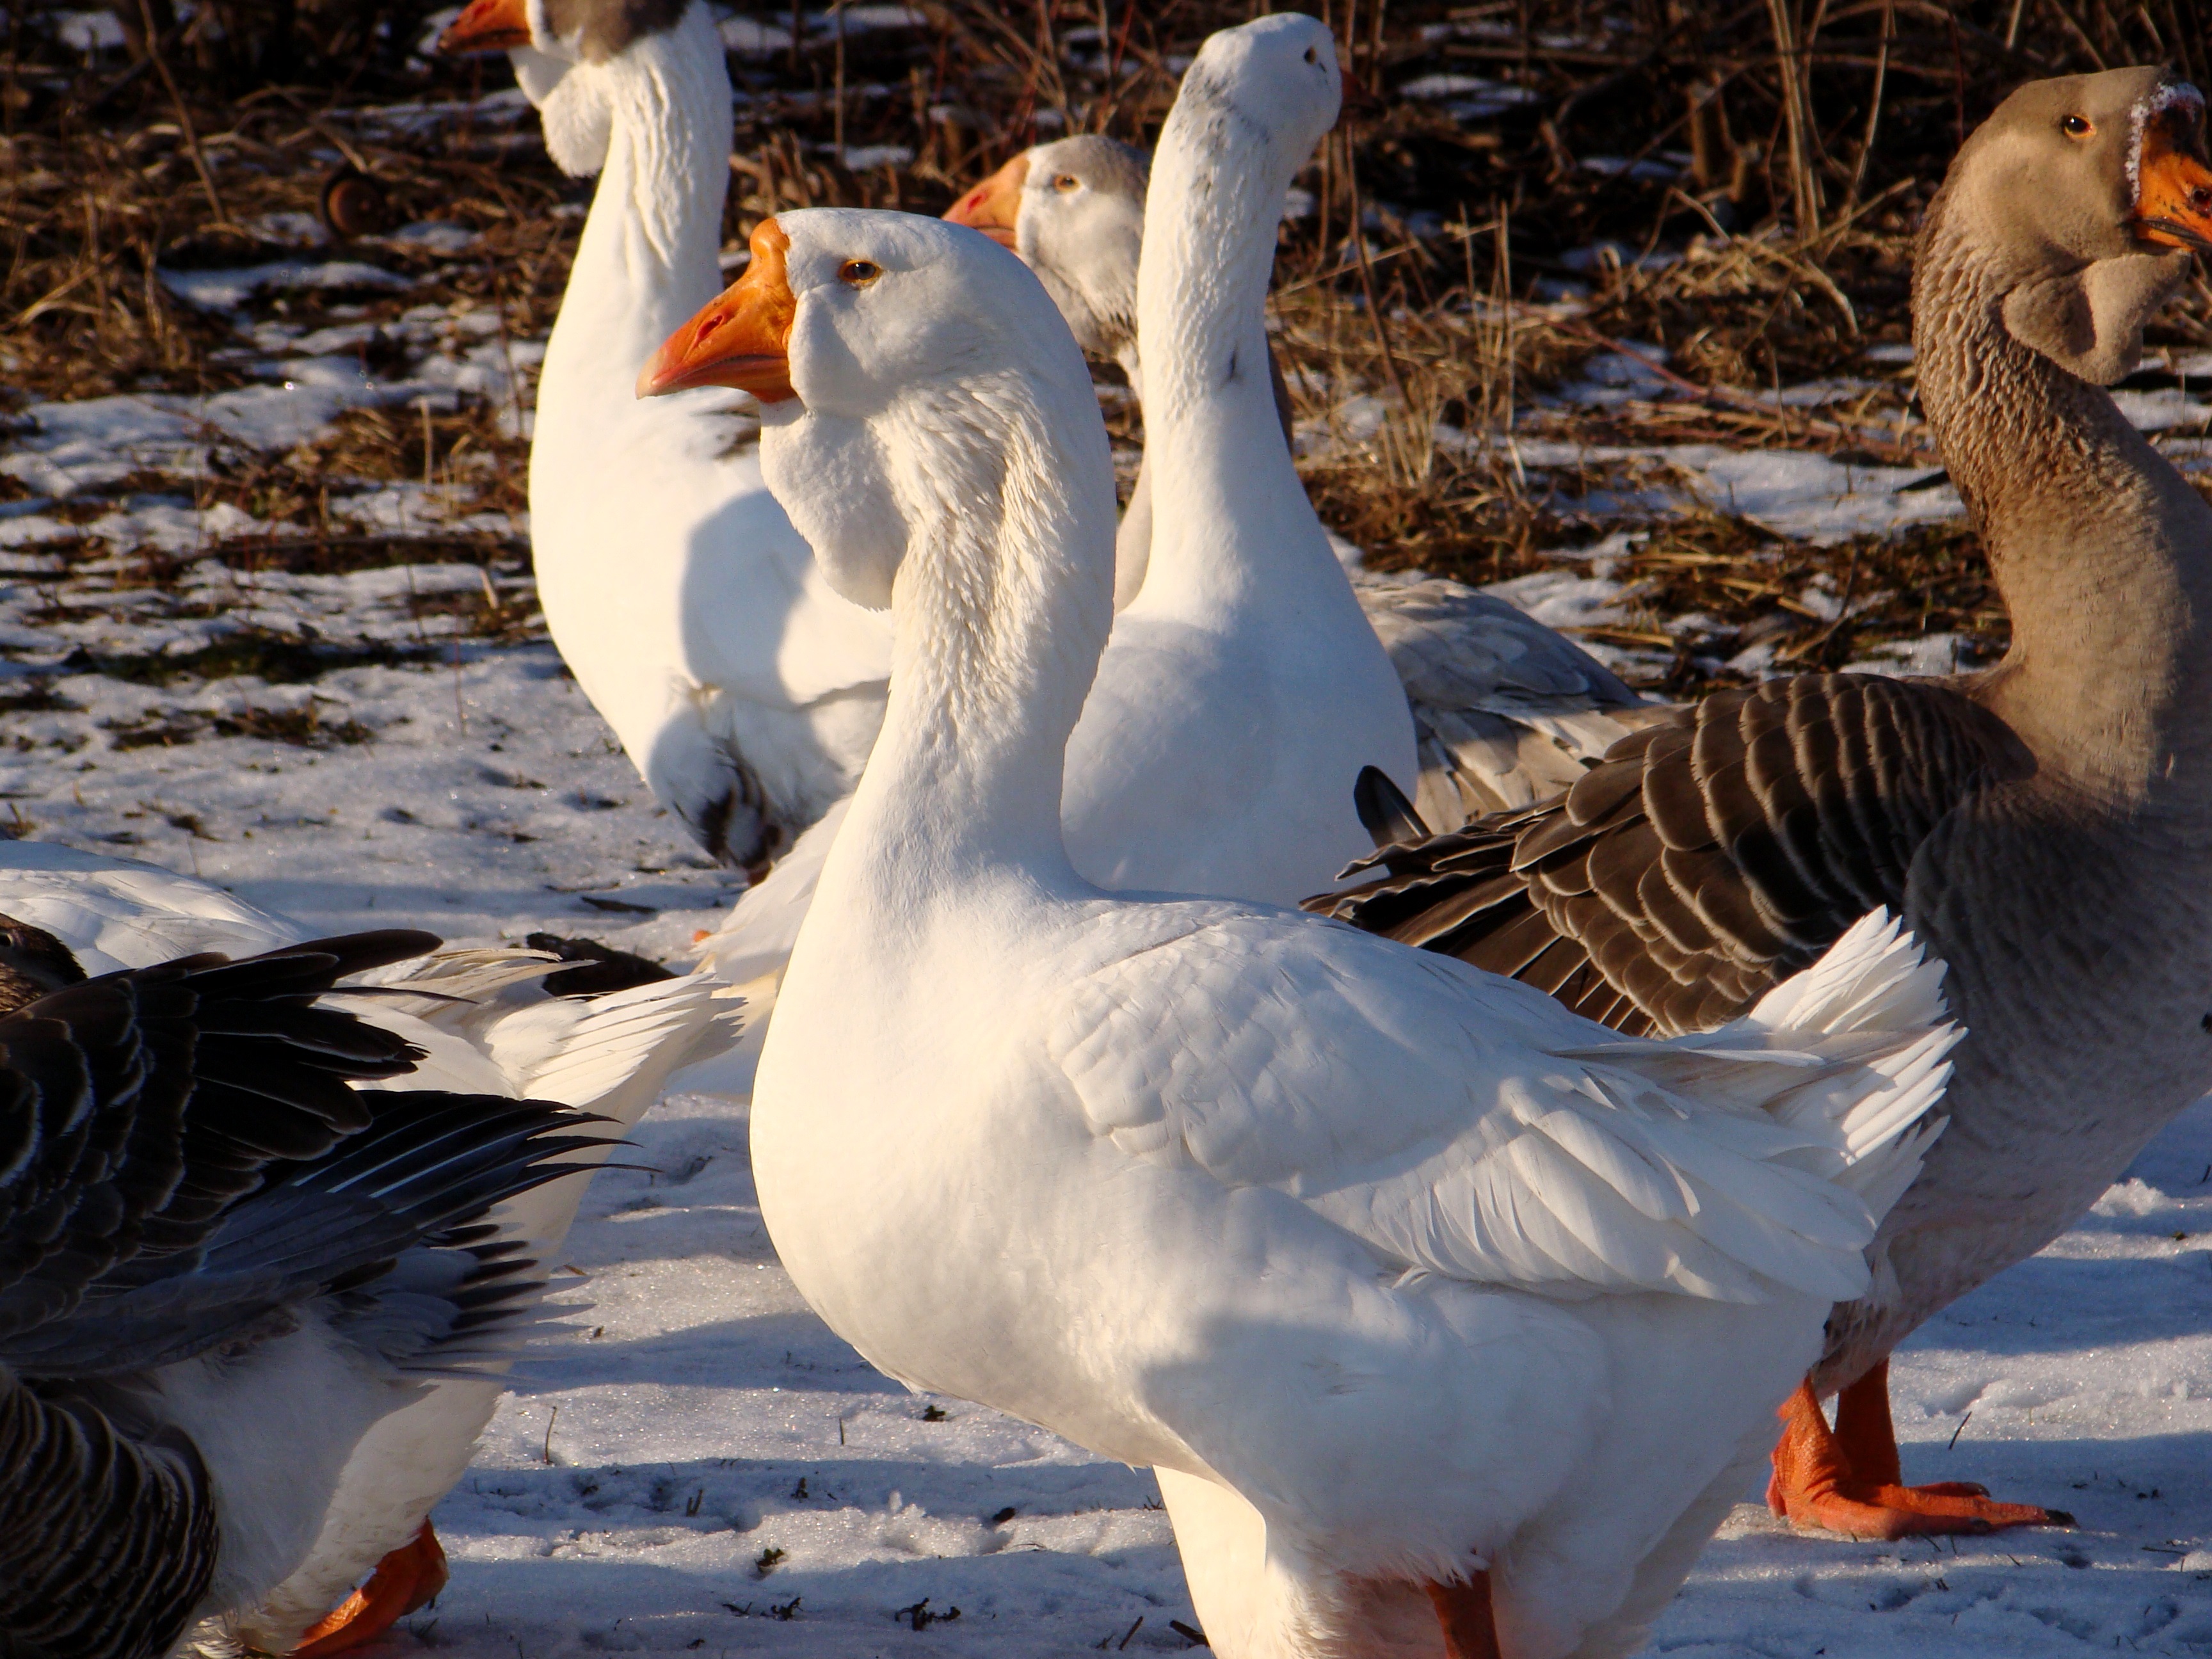 Уральские белые гуси – особенности продуктивности, описание внешнего вида